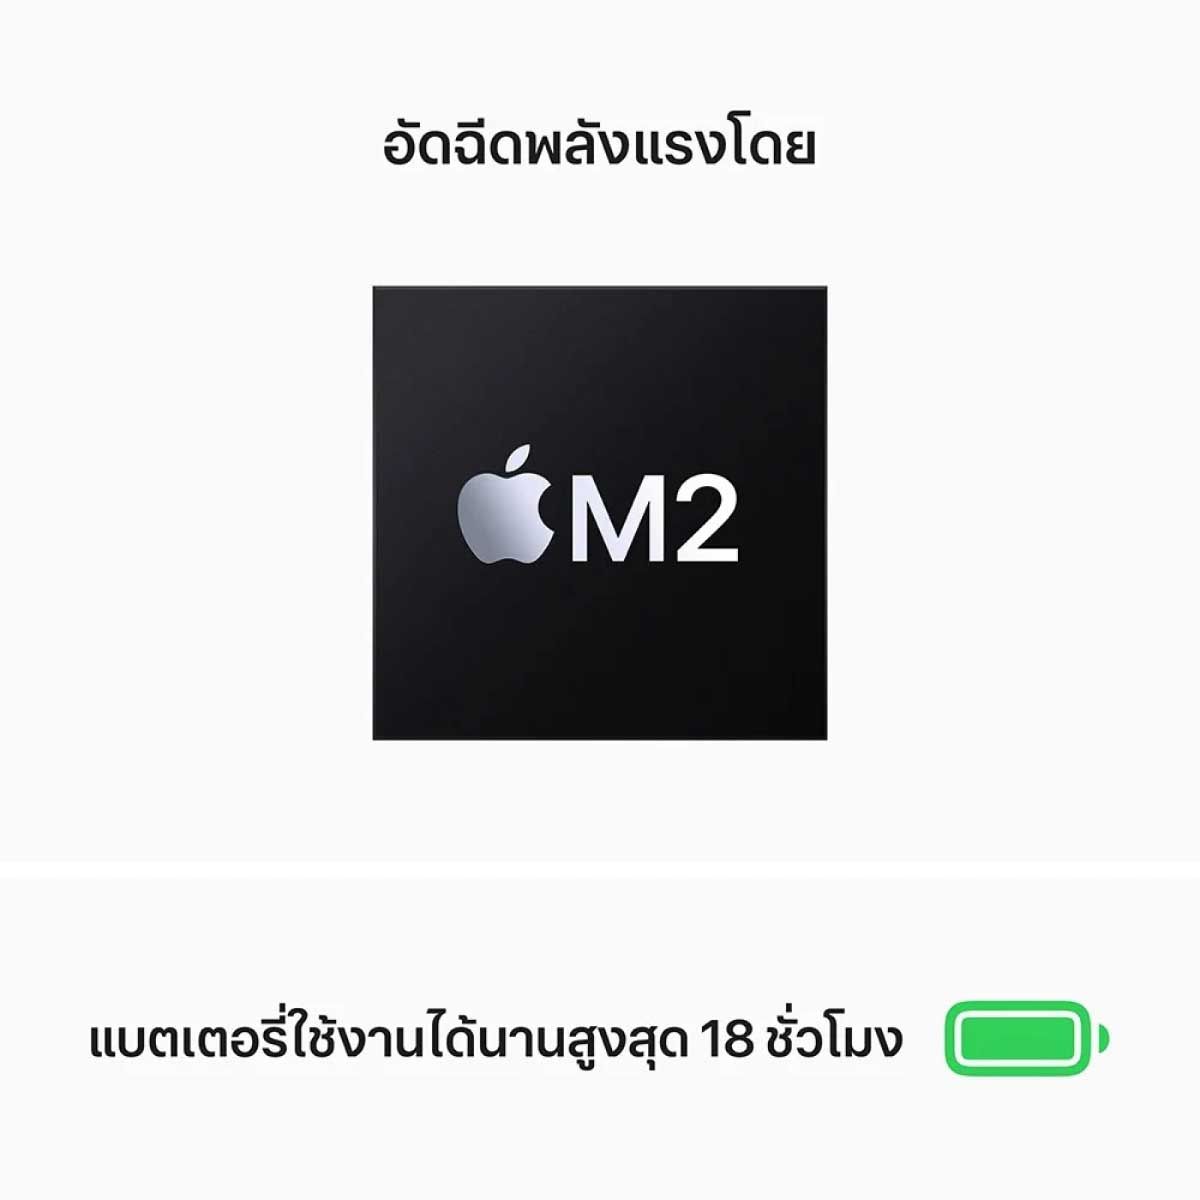 Apple  MacBook Air (รุ่น 13นิ้ว, ชิป M2)  (256GB/MIDNIGHT)